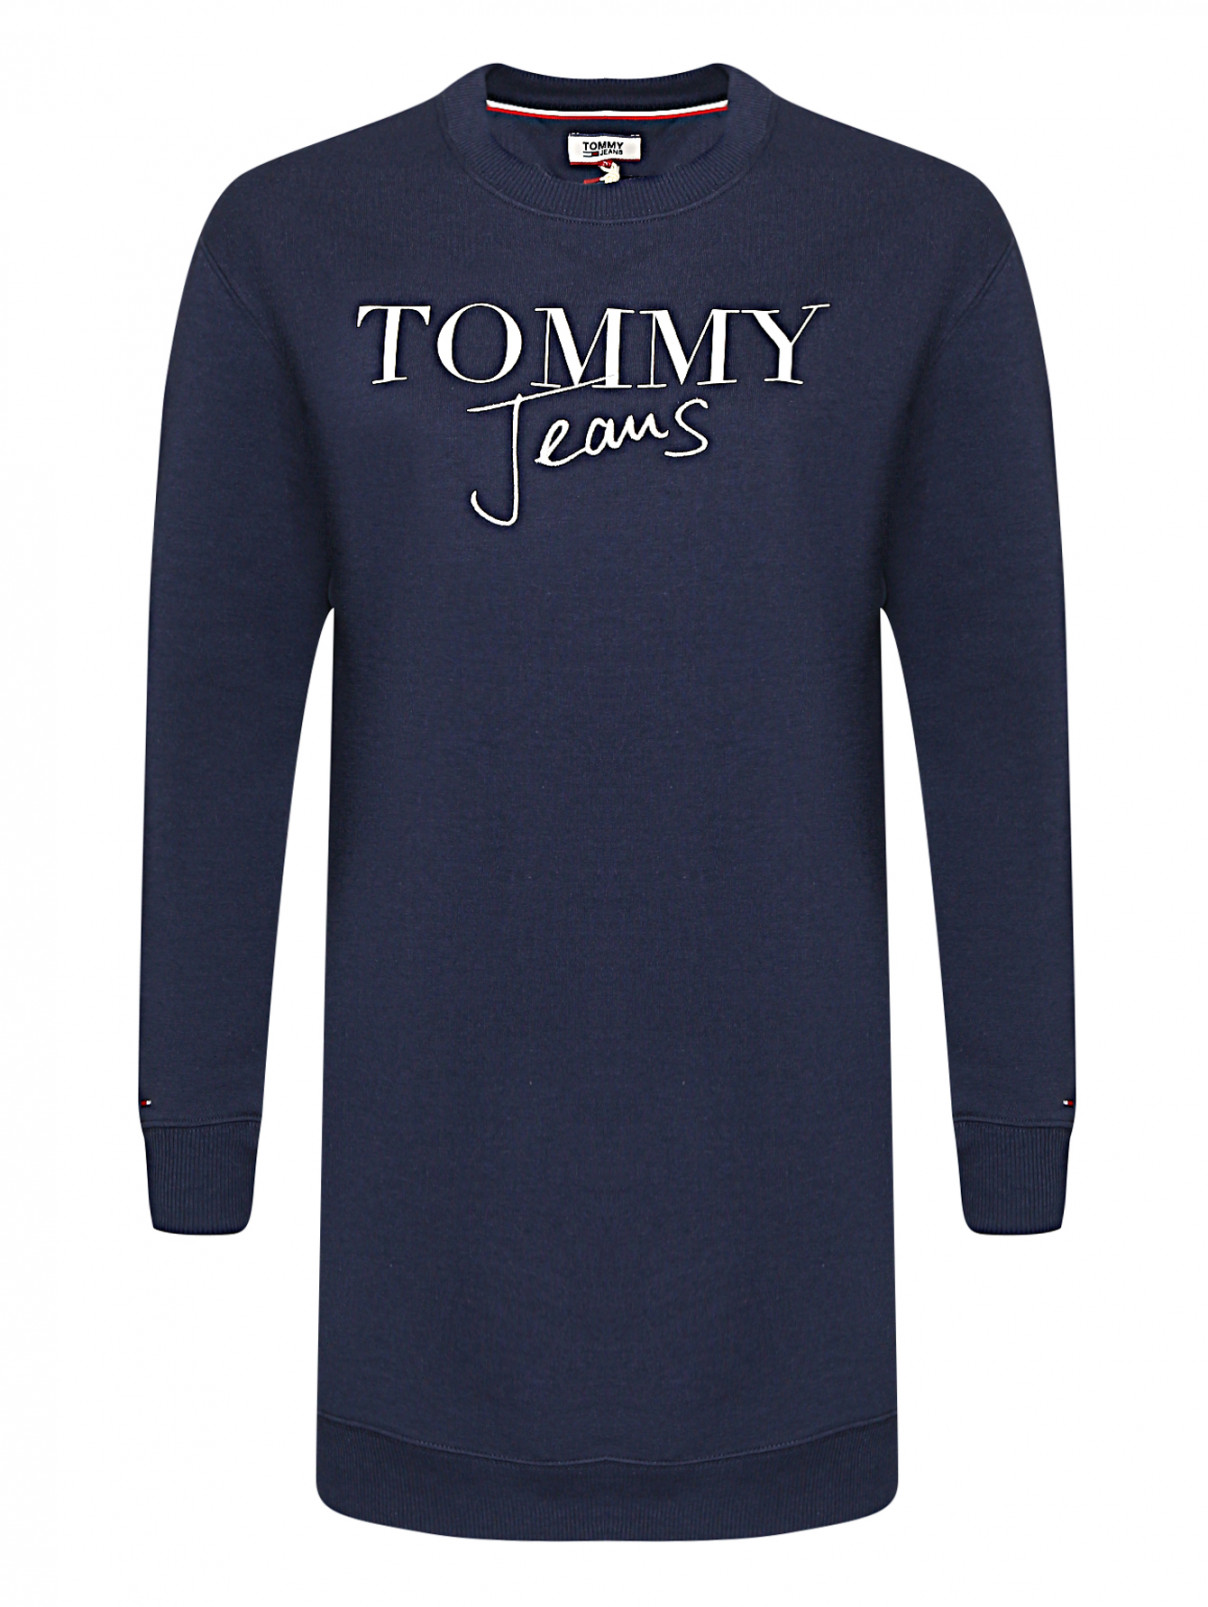 Платье из смешанного хлопка с принтом и вышивкой Tommy Jeans  –  Общий вид  – Цвет:  Синий